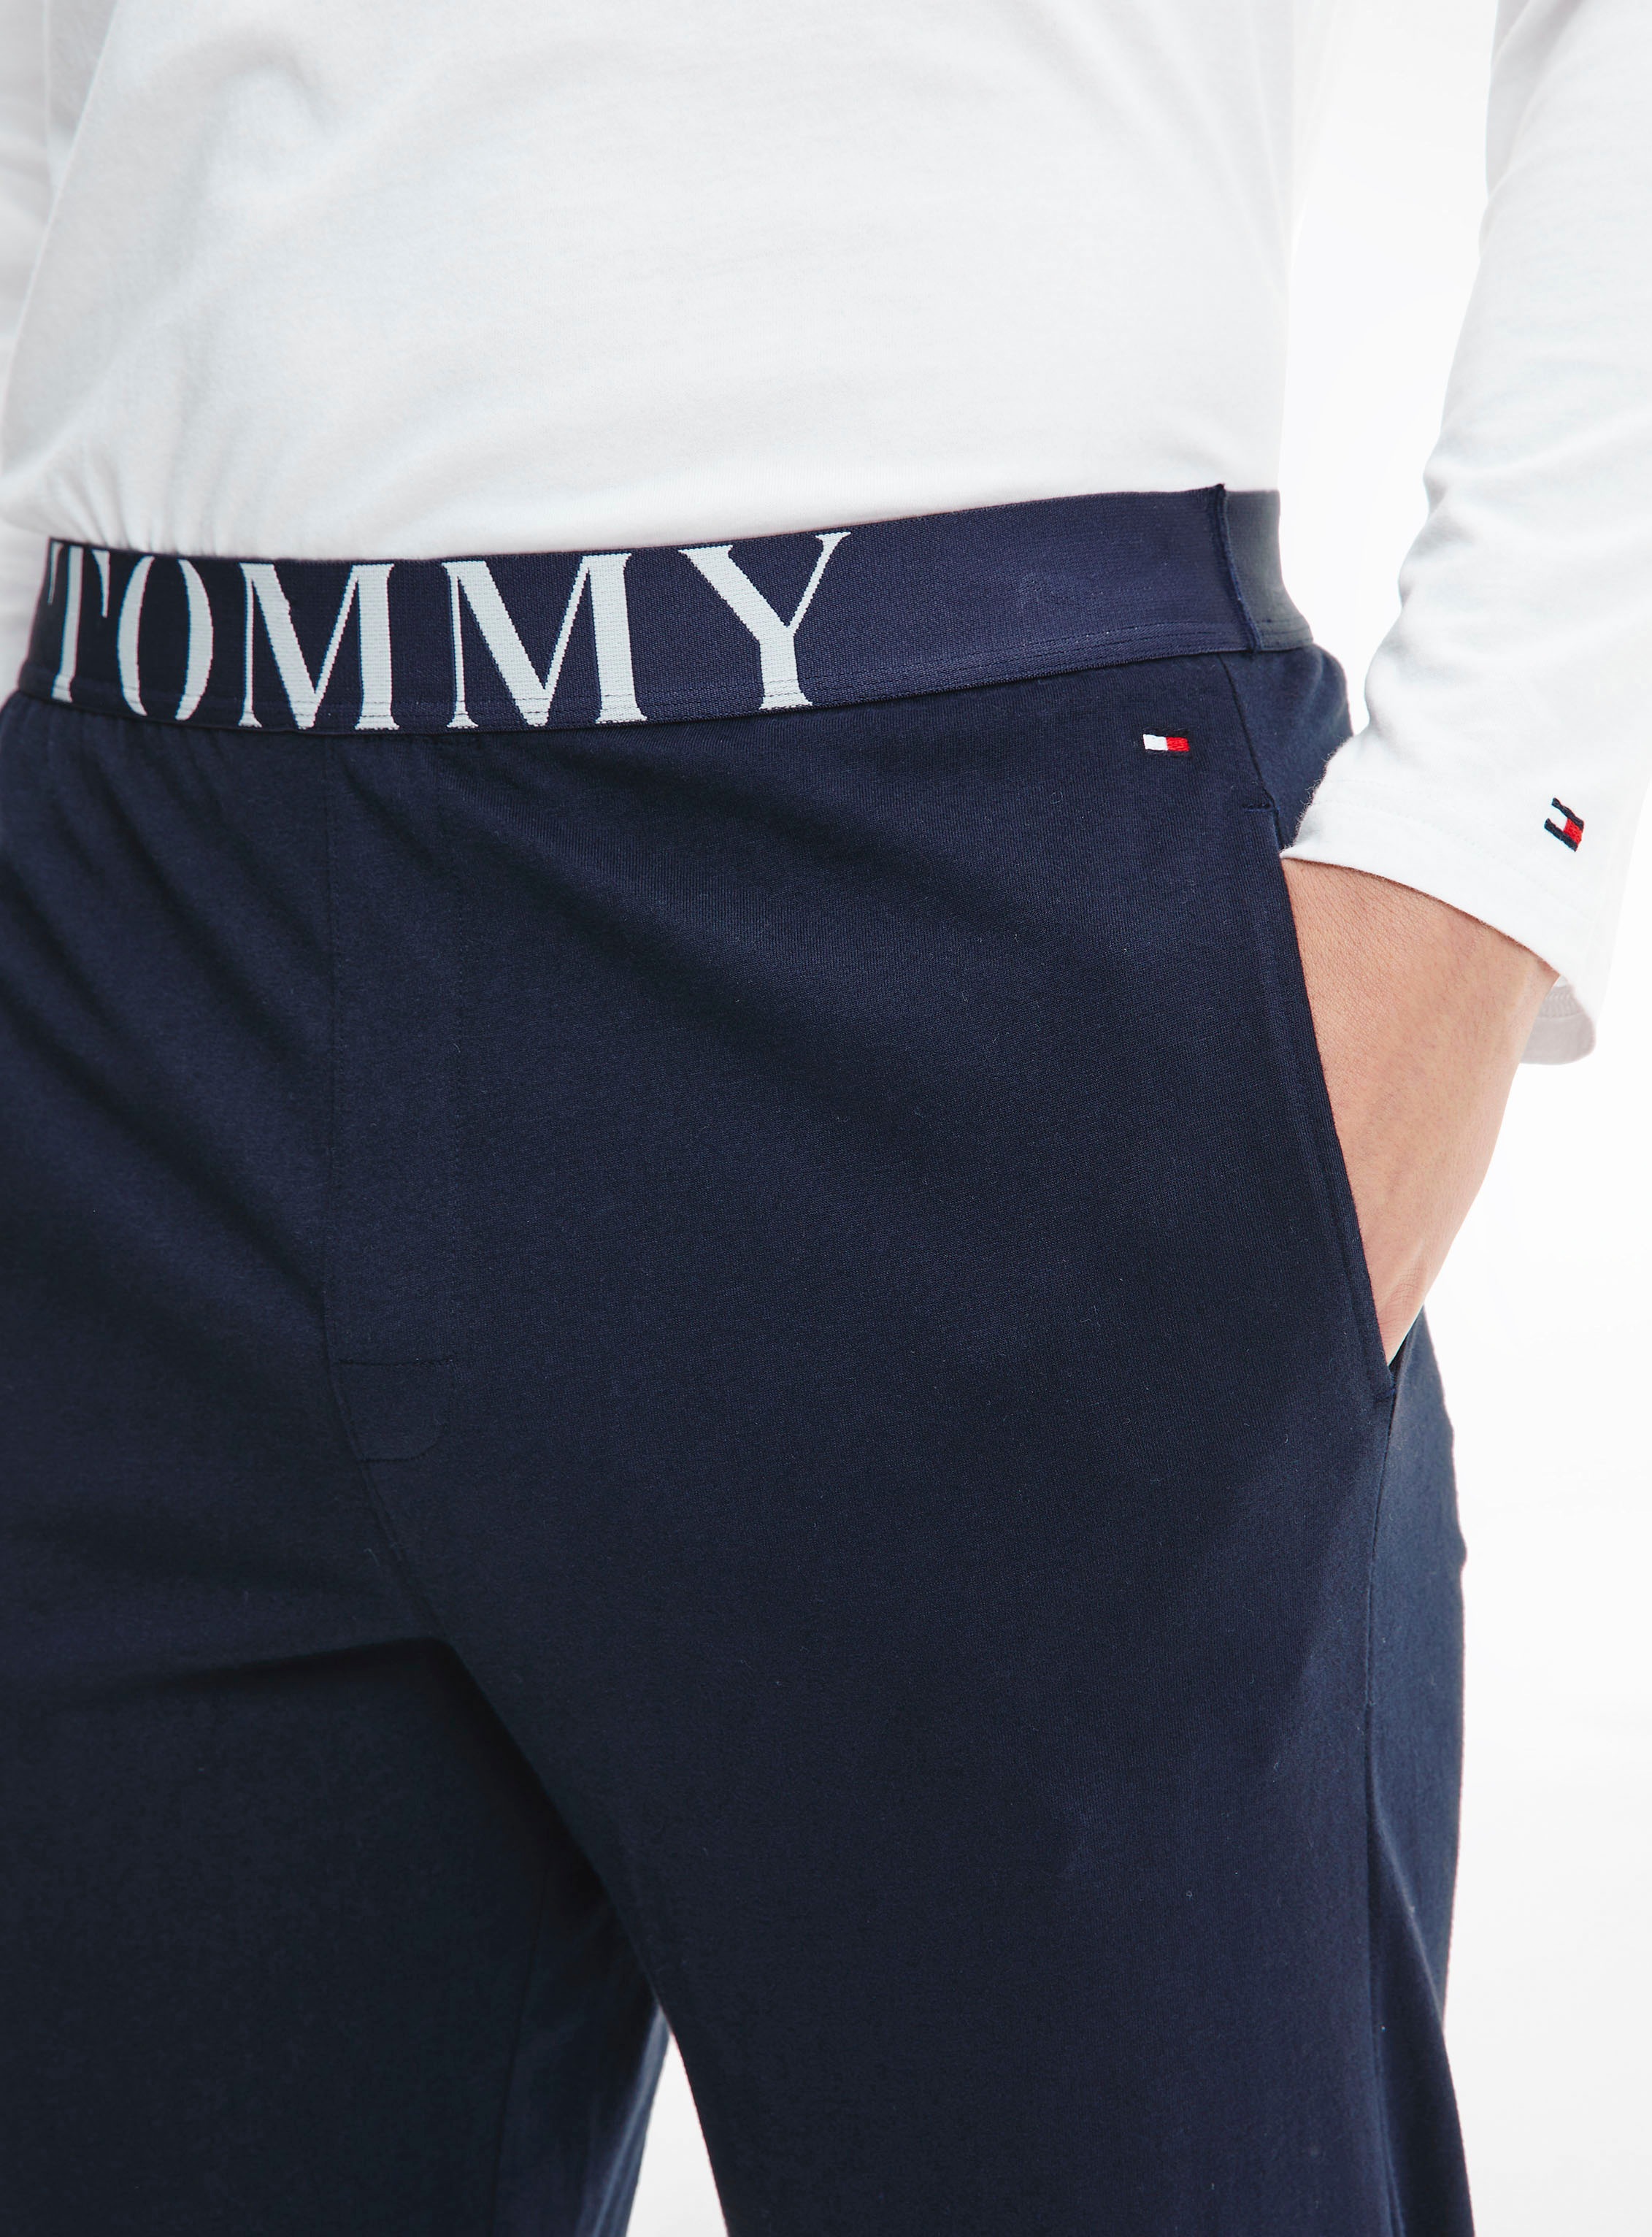 Tommy Hilfiger Underwear Pyjama, (2 tlg.), mit Tommy Hilfiger Logo-Schriftzug am Bund